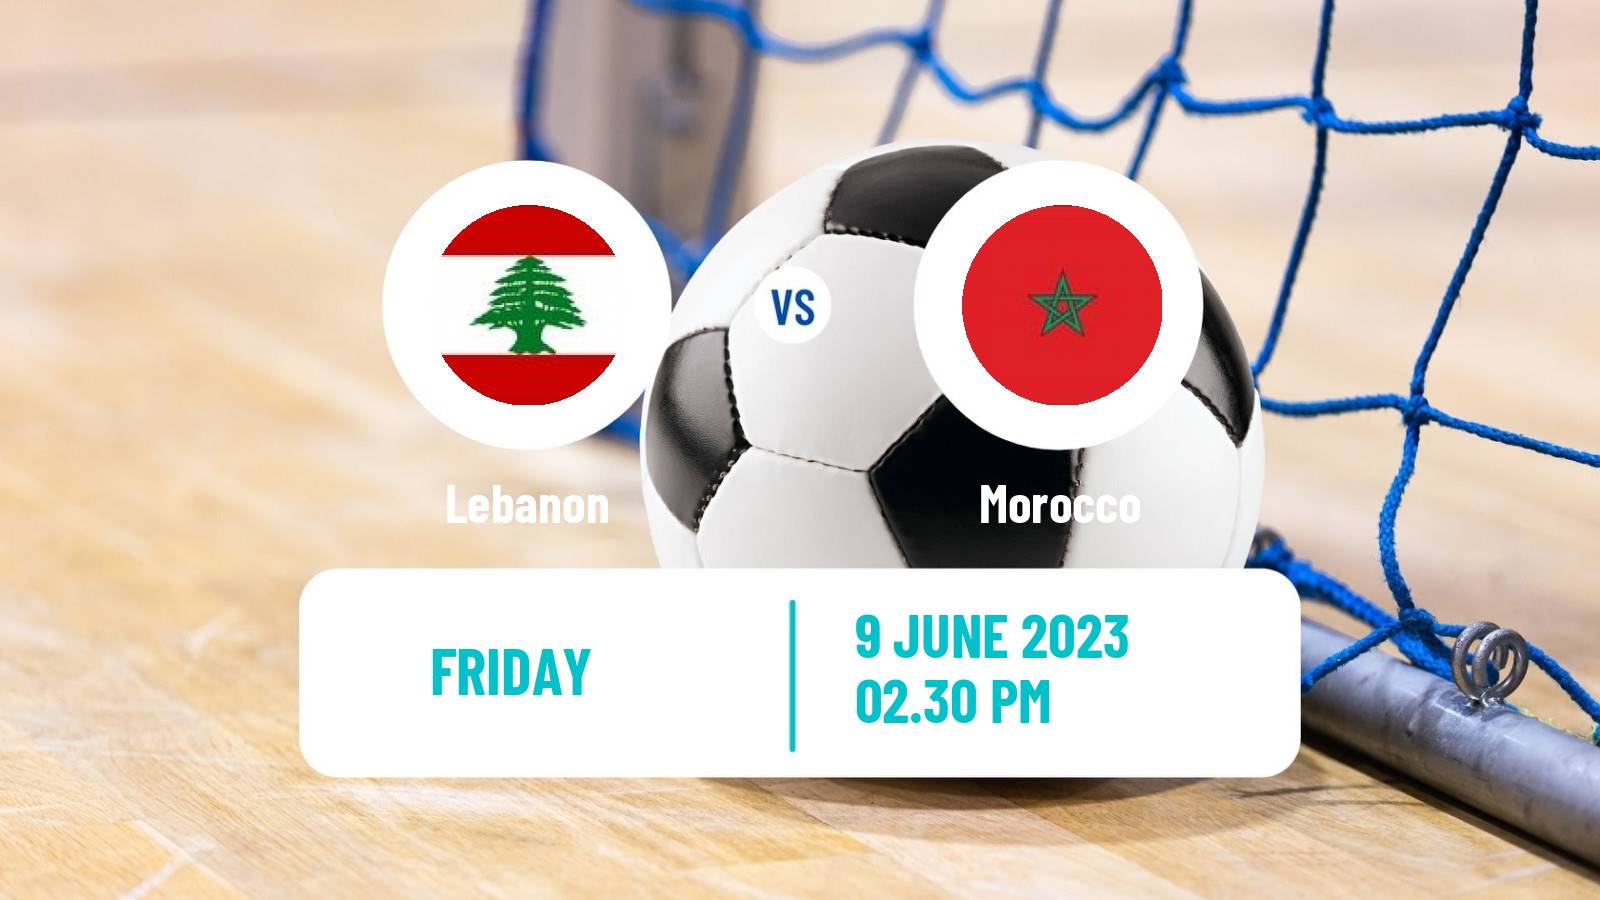 Futsal Arab Futsal Cup Lebanon - Morocco